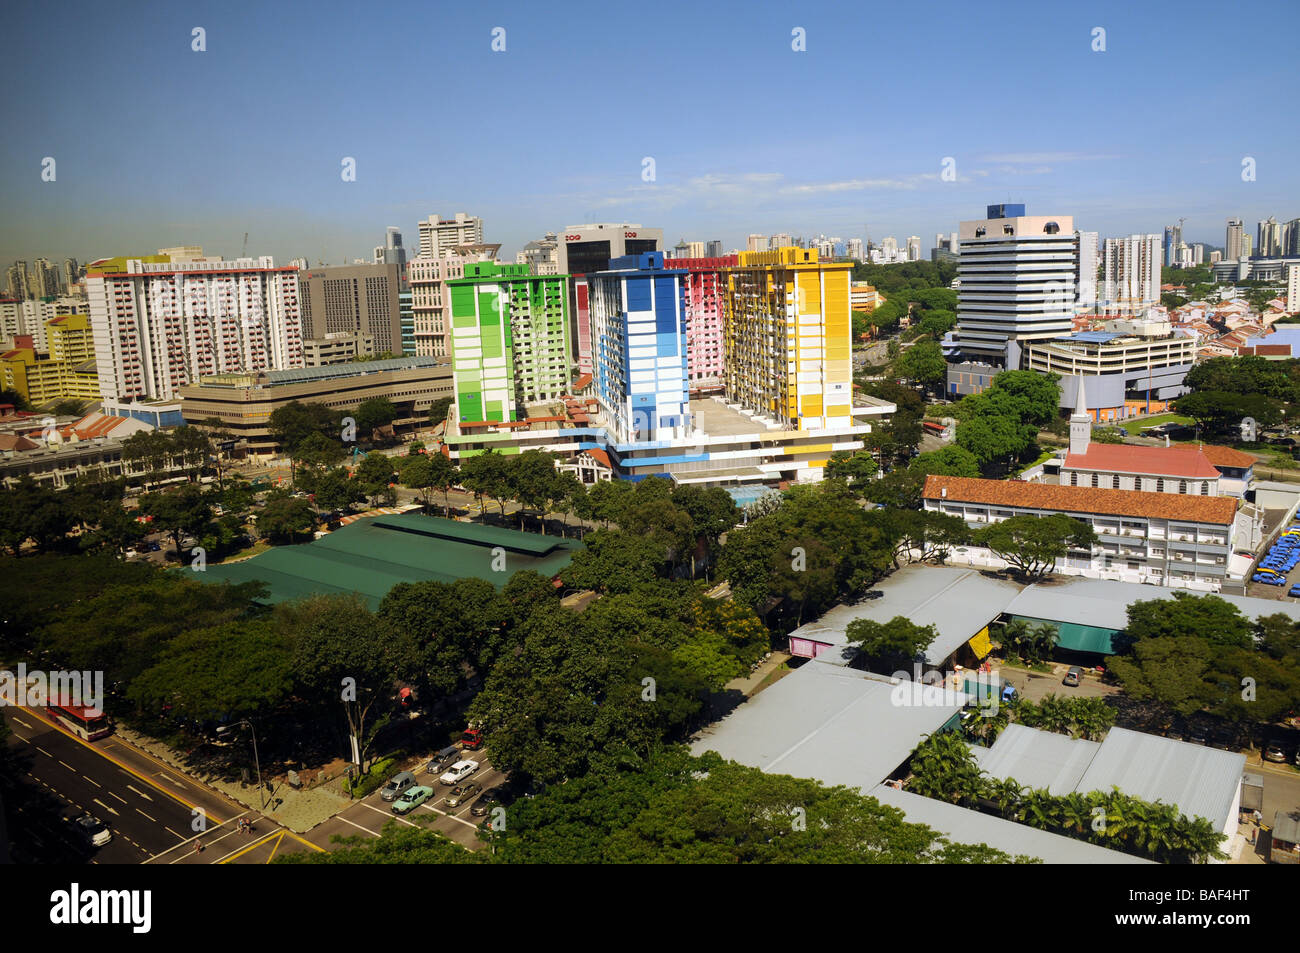 Singapour, un bloc d'appartements. ne peuvent que croître vers le haut maintenant, c'est pourquoi un si grand nombre de tours,et les gens vivent dans des appartements uniquement Banque D'Images